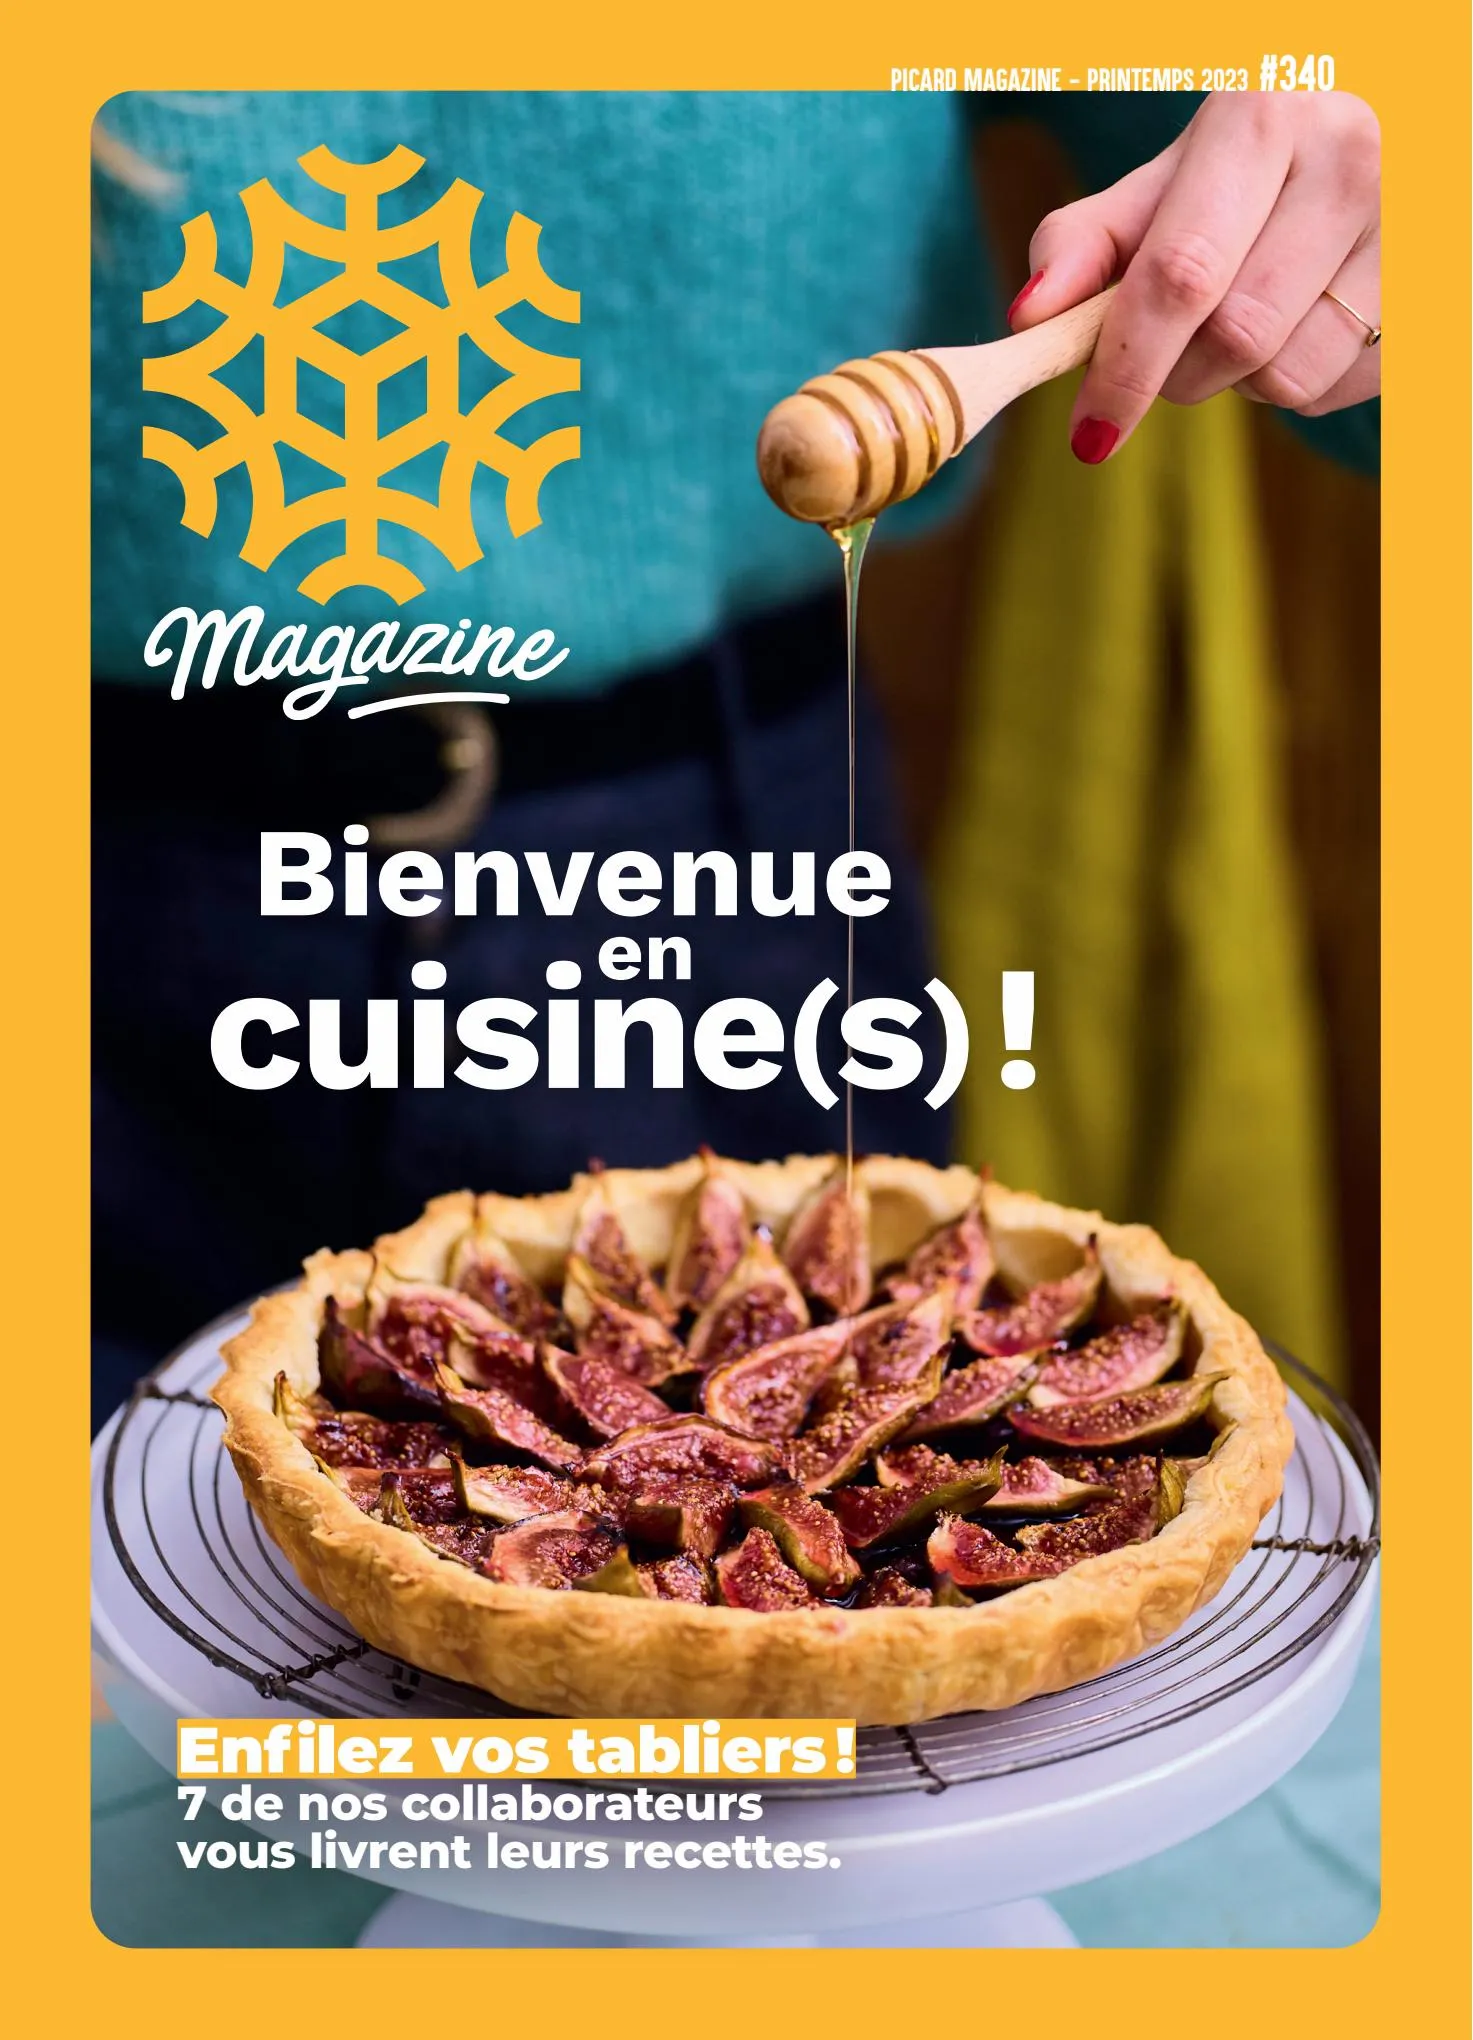 Catalogue Picard Magazine – Bienvenue en cuisine(s), page 00001